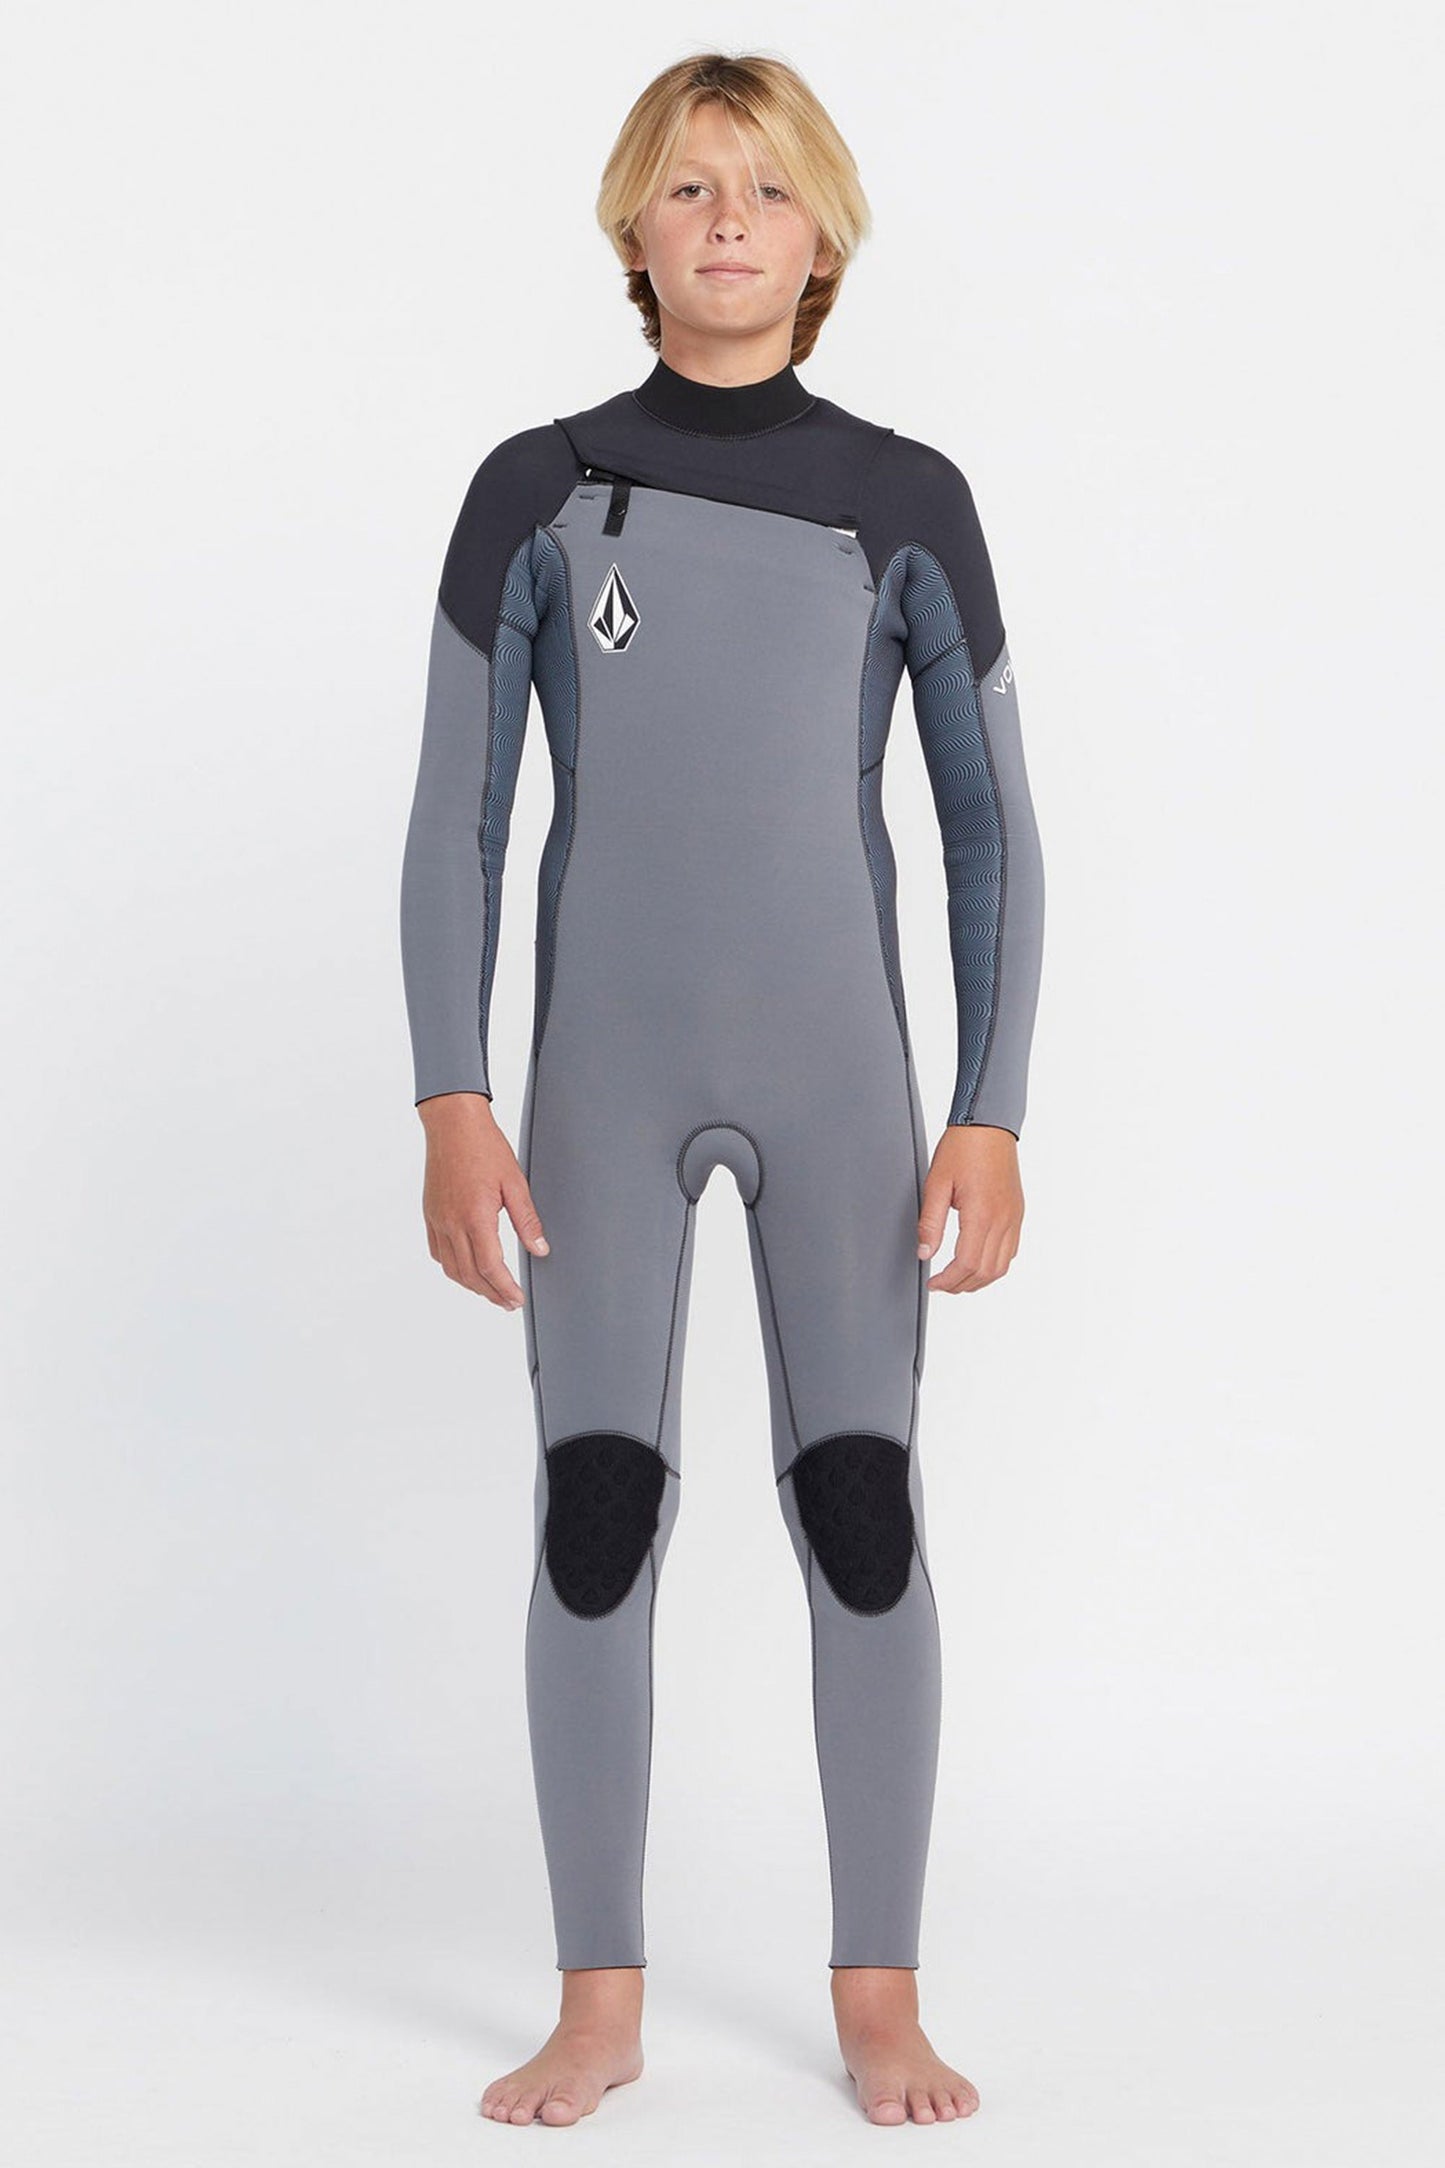 Pukas-Surf-Shop-Volcom-Wetsuit-wetsuit-3-2mm-chest-zip-charcoal